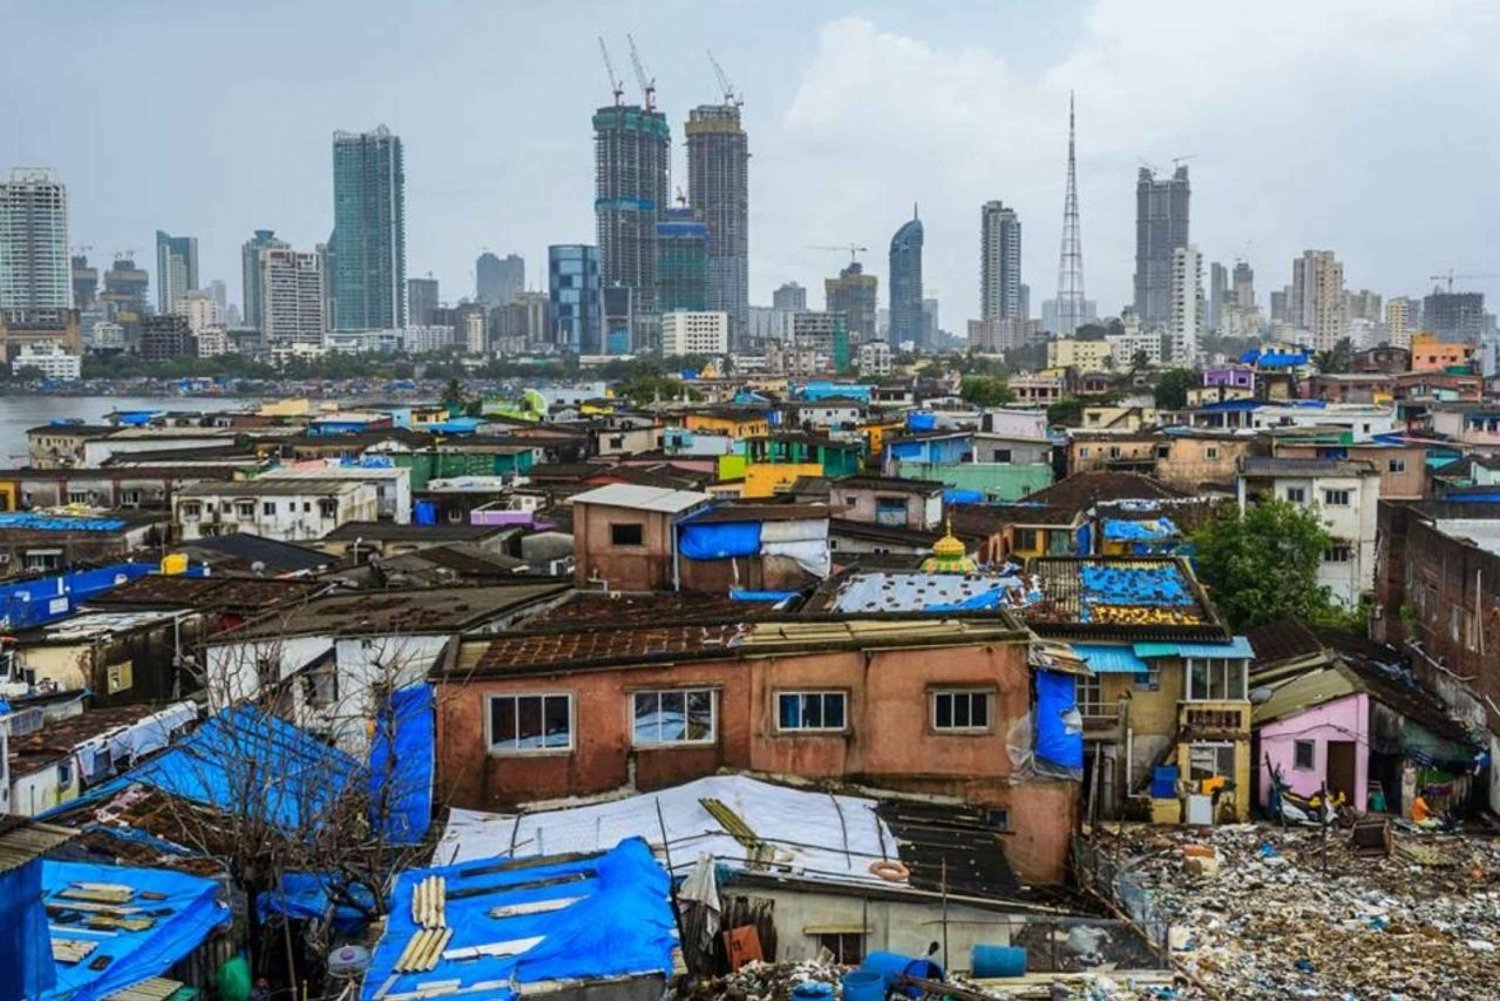 Paseo por los barrios marginales de Dharavi, Mumbai